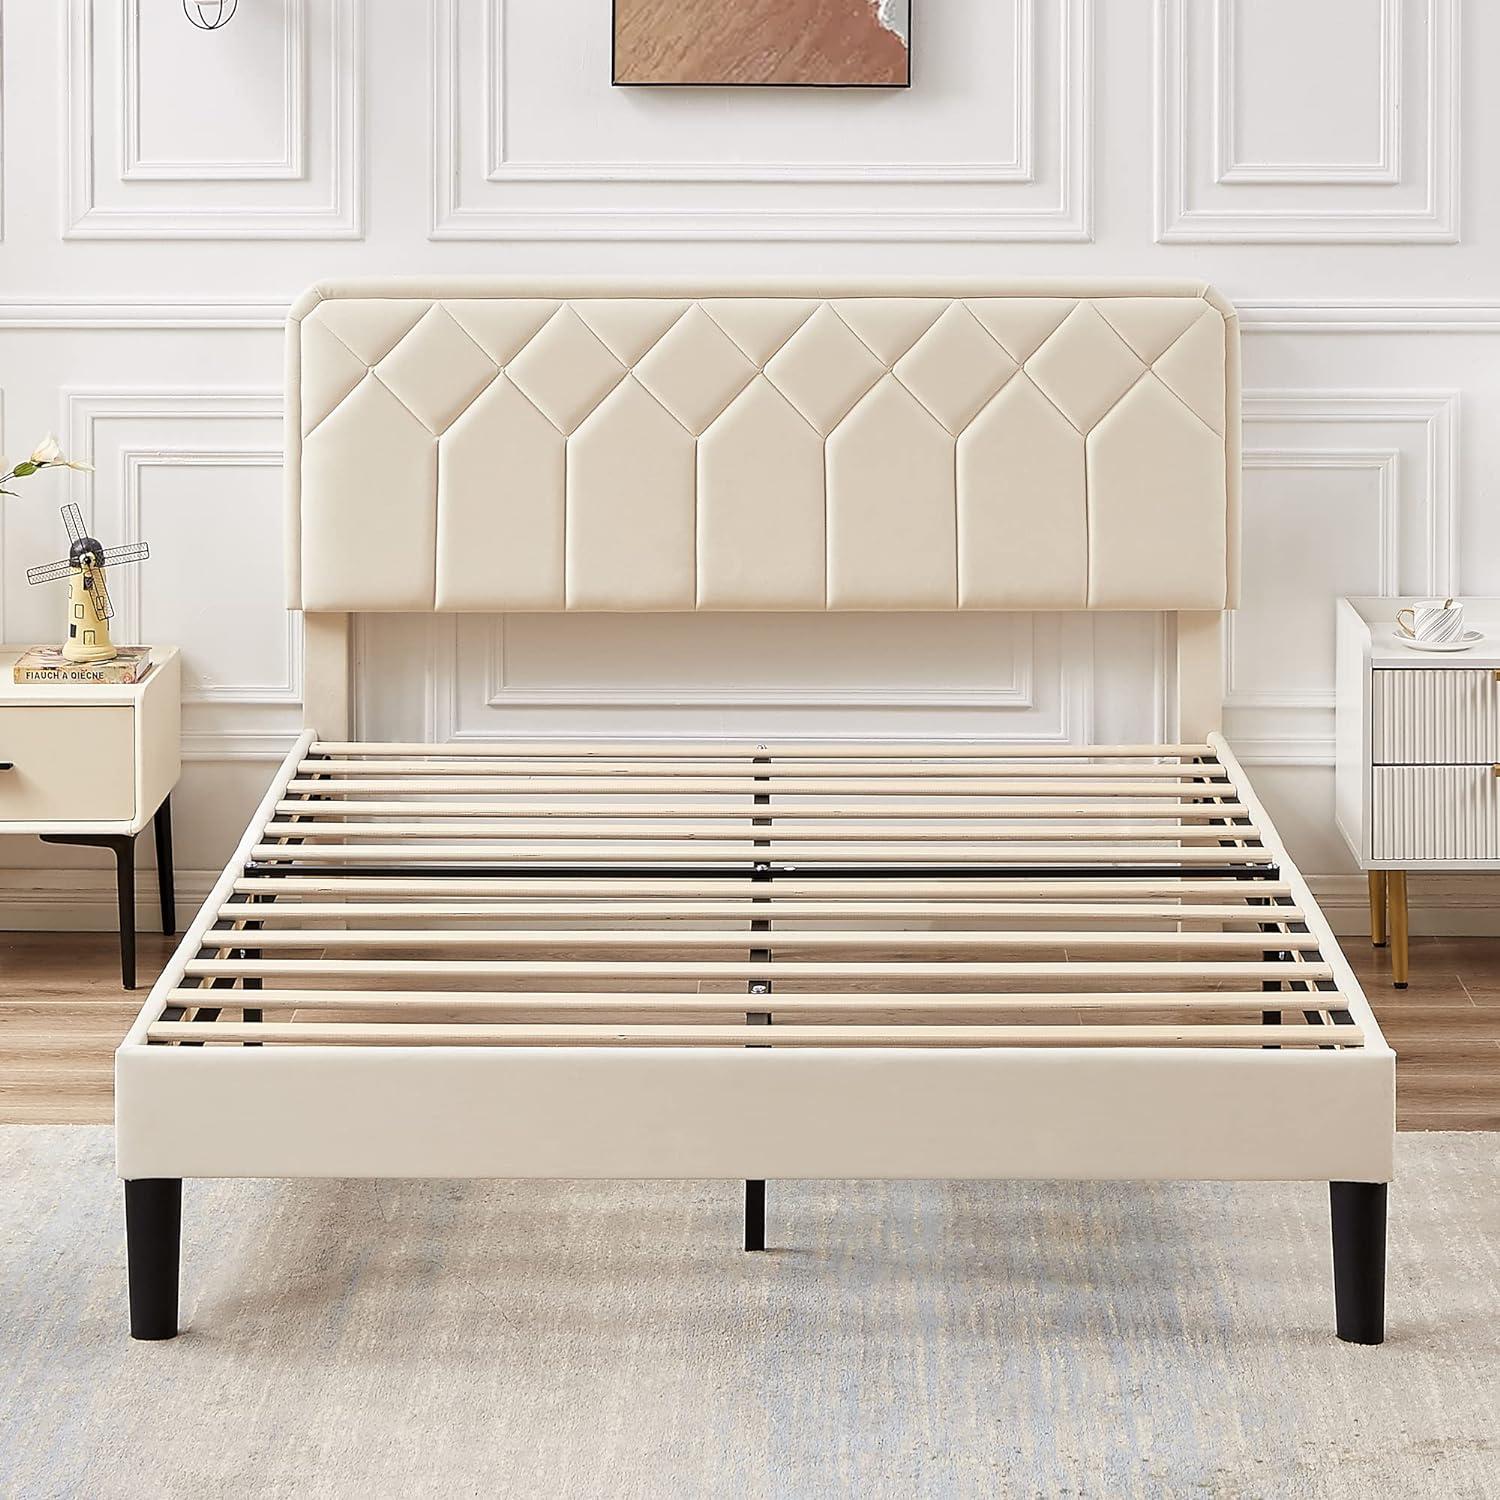 VECELO Premium Leather Upholstered Platform Bed Frame